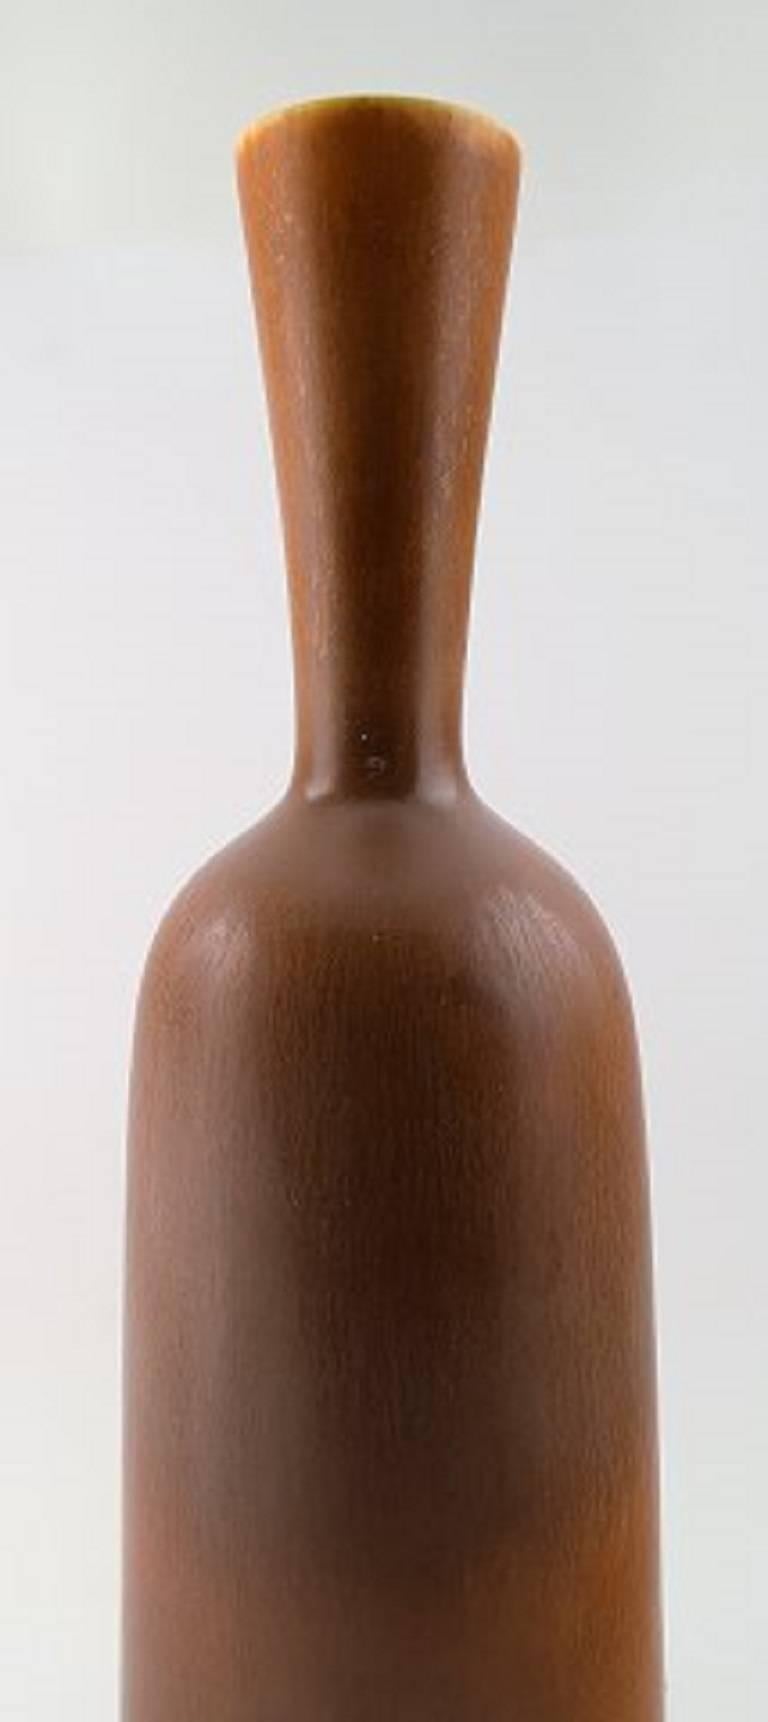 Grand vase en poterie de Berndt Friberg Studio. Design suédois moderne. 

Unique, fait à la main. Une glaçure fine en nuances de brun !

Parfait. 1ère. Qualité d'usine. 

Estampillé a = 1959

Taille : 36 cm. de hauteur.